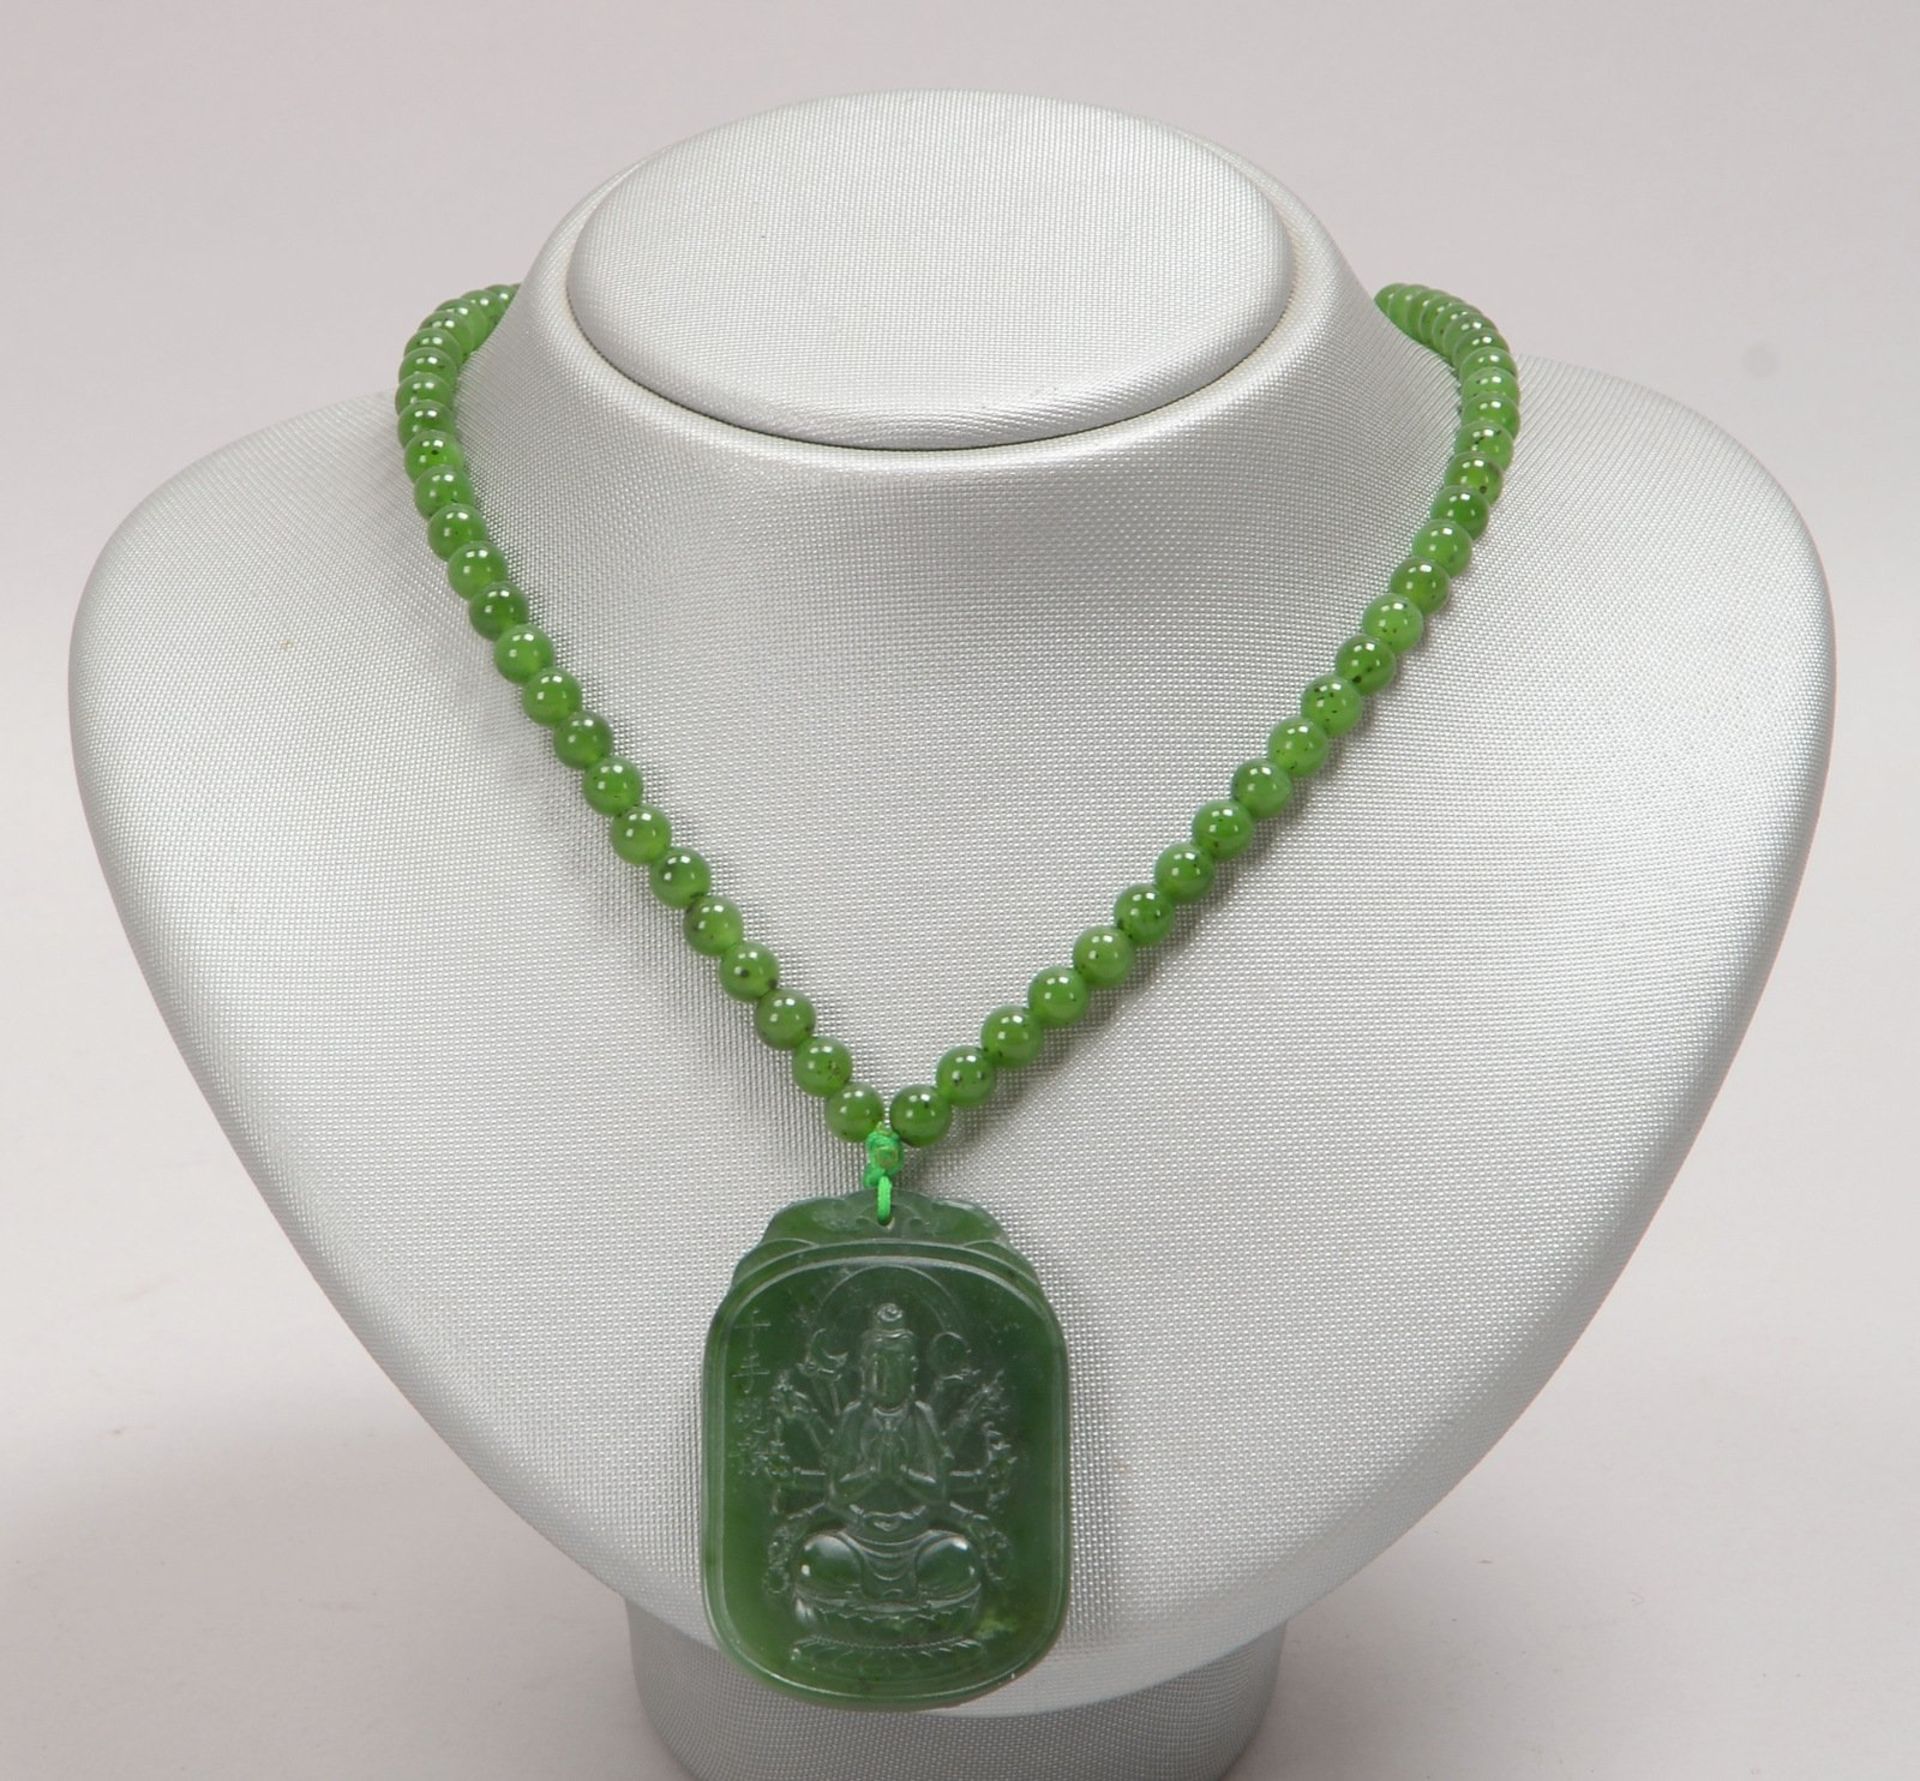 Halskette mit Anhänger, Nephritjade; Länge Kette 64 cm, Anhänger 5 x 3,5 cm